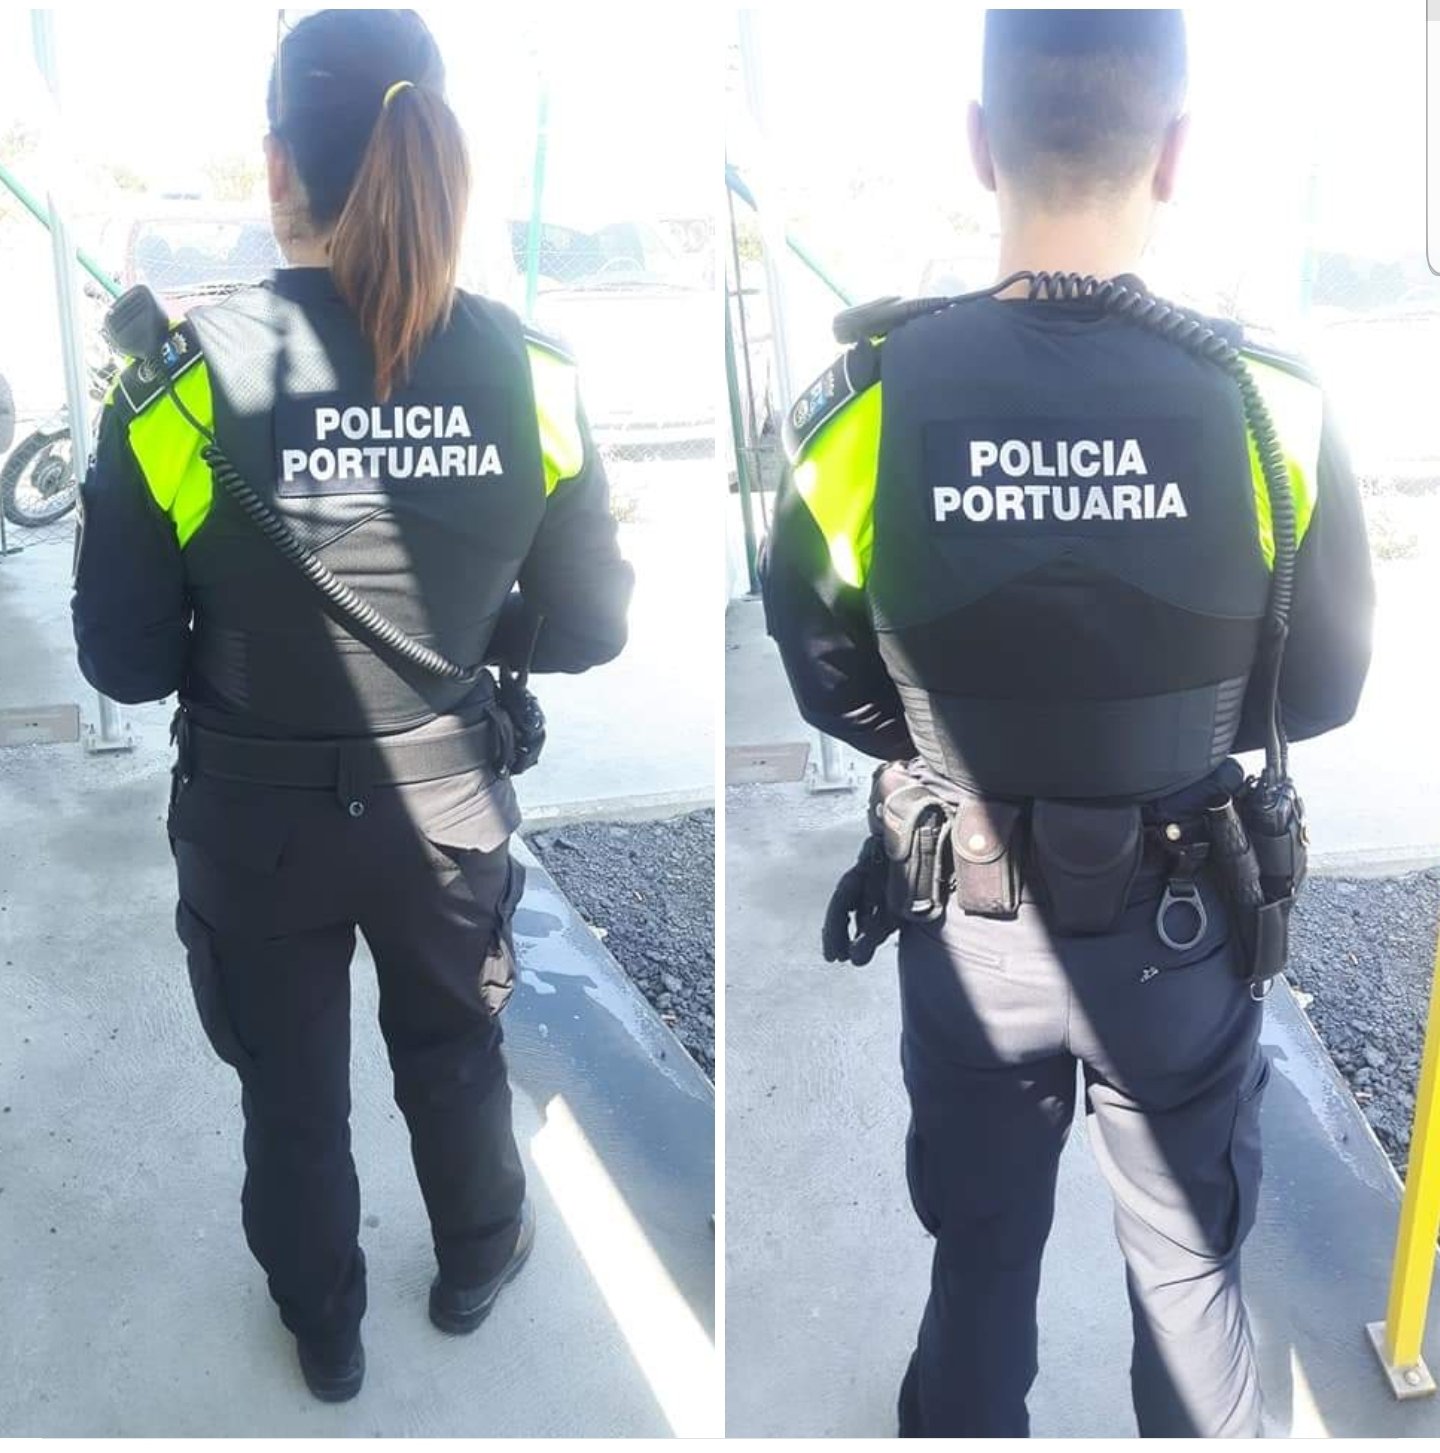 POLICÍA PORTUARIA HUELVA on Twitter: "Un pasito mas en la autoprotección de  la Policía Portuaria! Nuevos chalecos Antibalas... https://t.co/TytWGDSL3b"  / Twitter